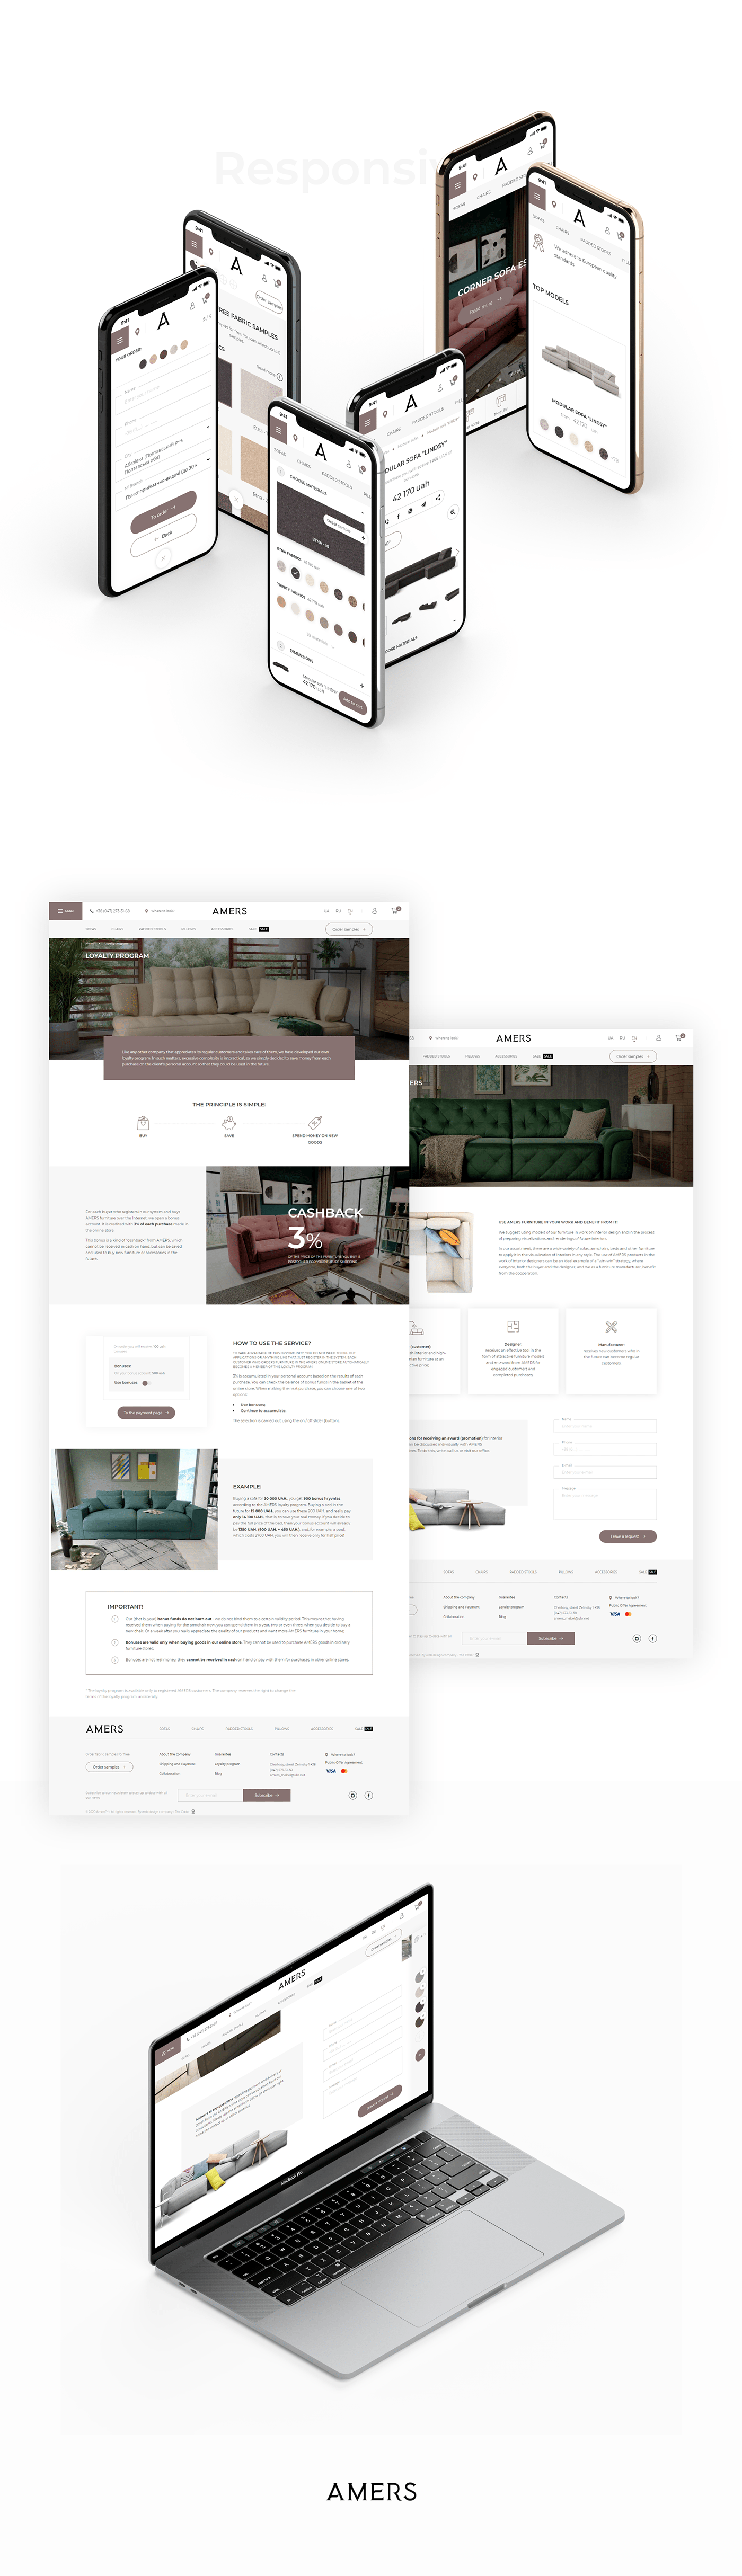 Catalogue e-commerce furniture Online shop UI ux Web Design  Website